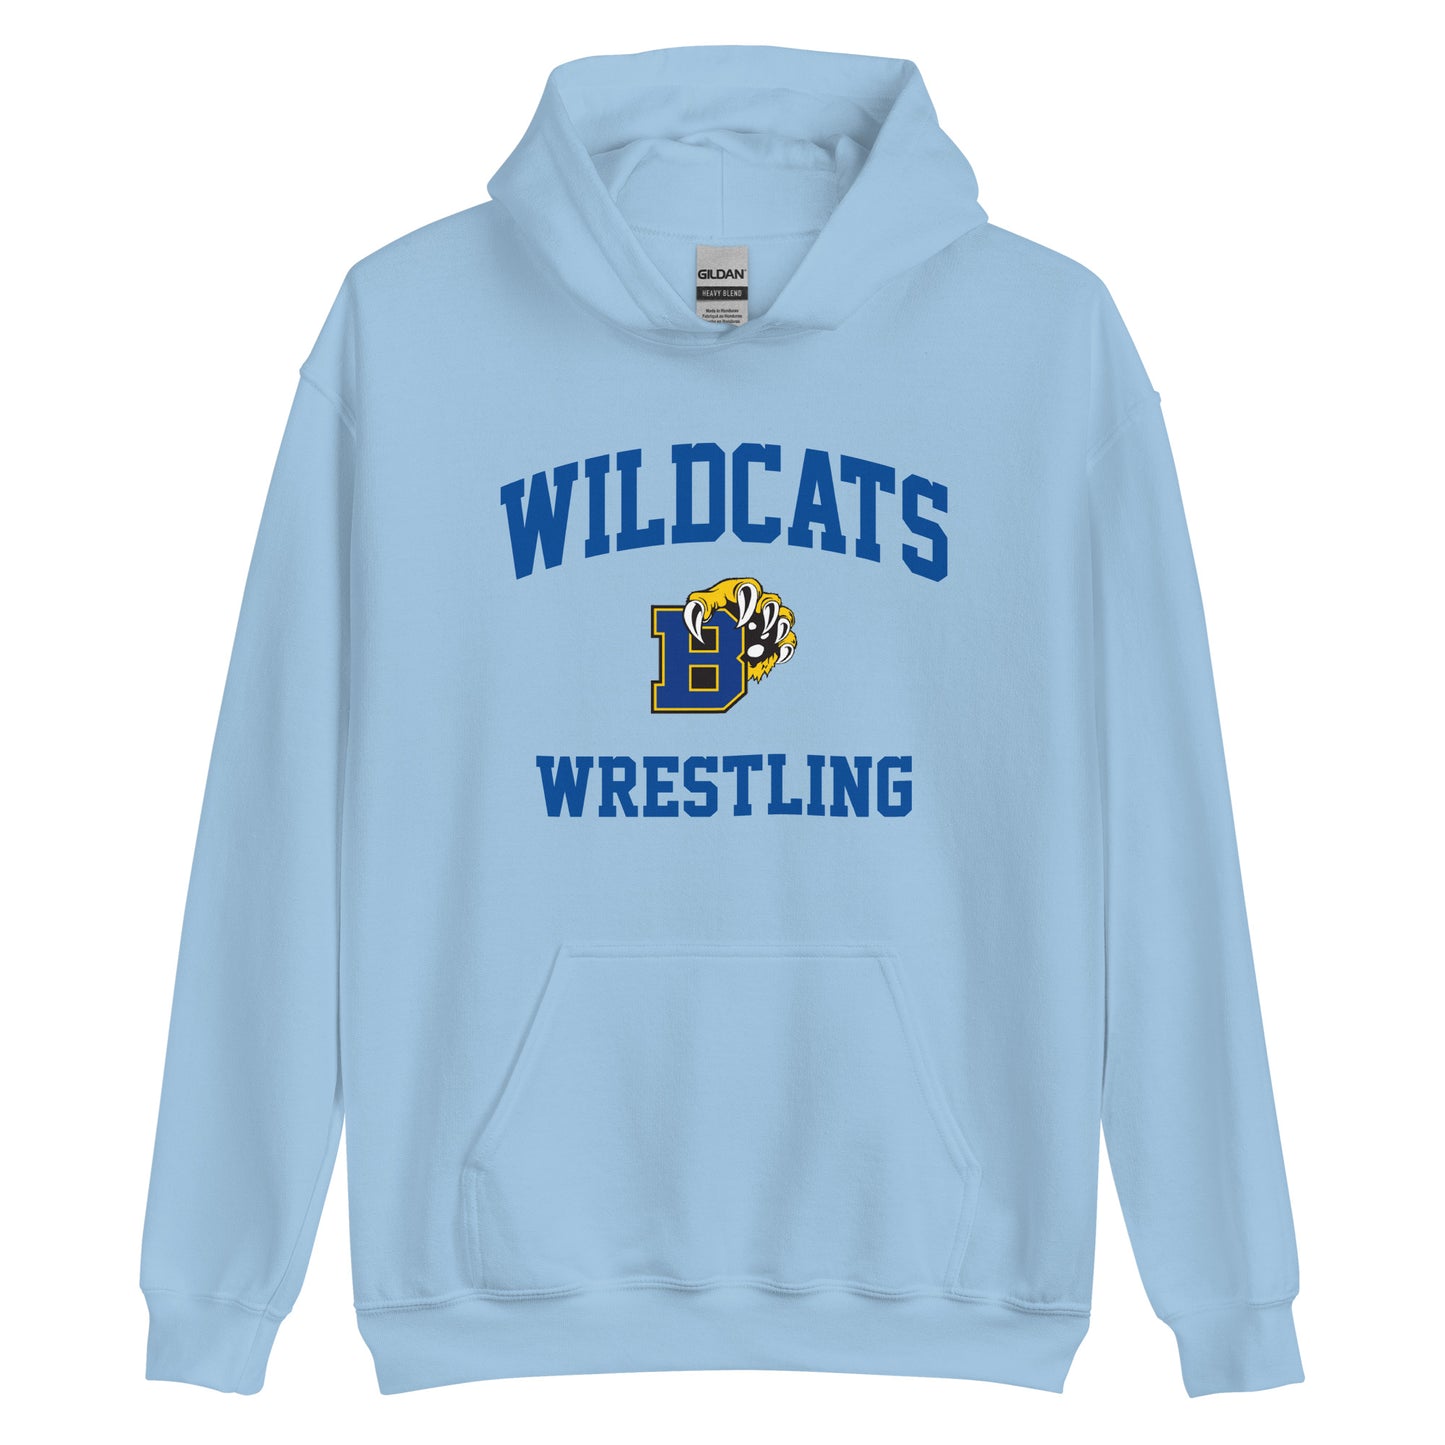 Wildcats Wrestling Unisex Hoodie